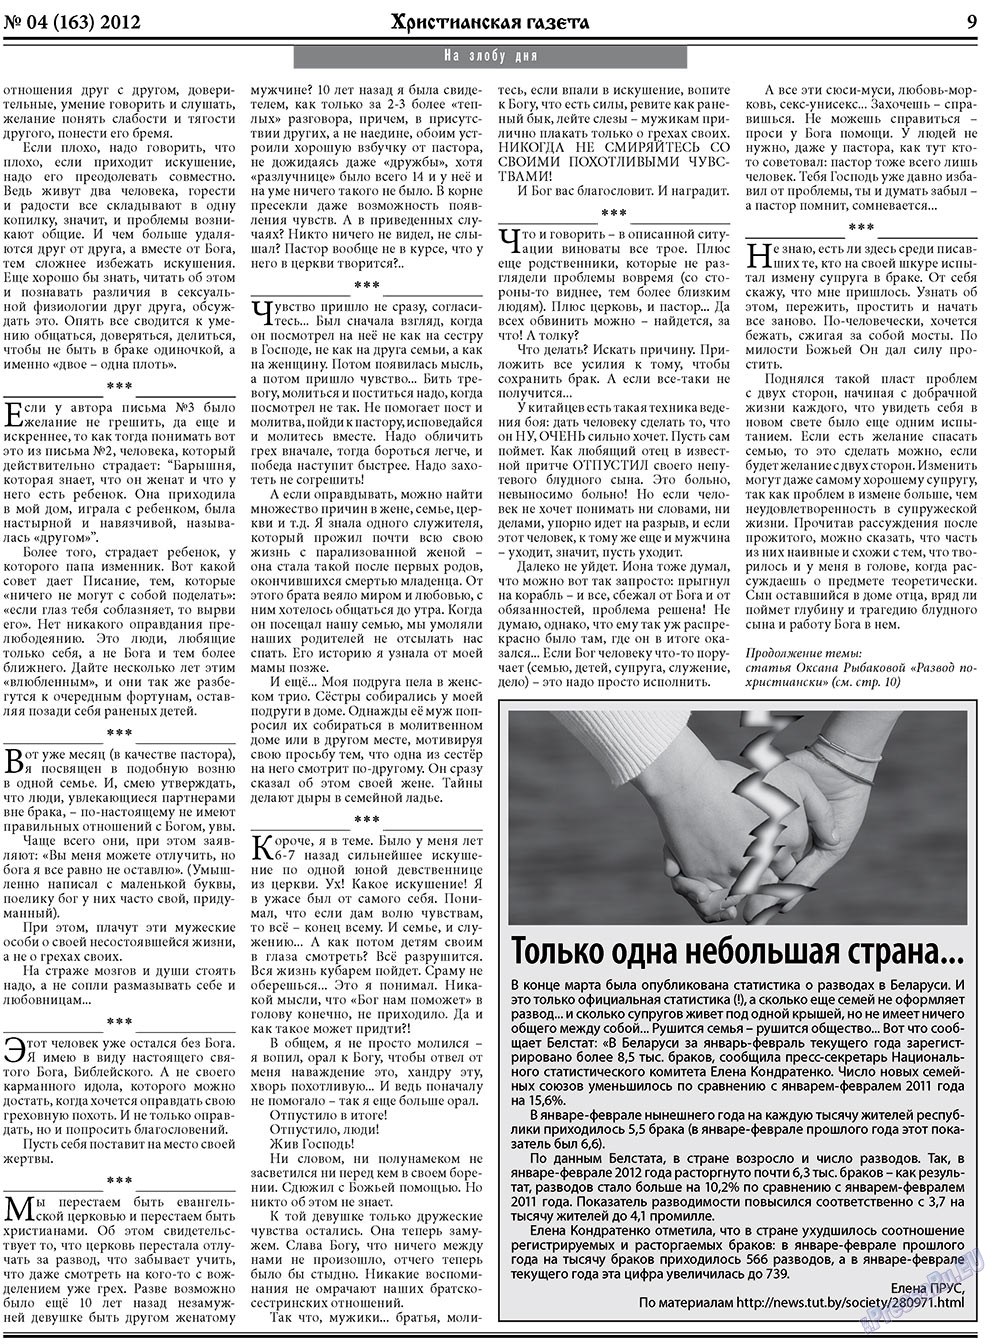 Христианская газета (газета). 2012 год, номер 4, стр. 9